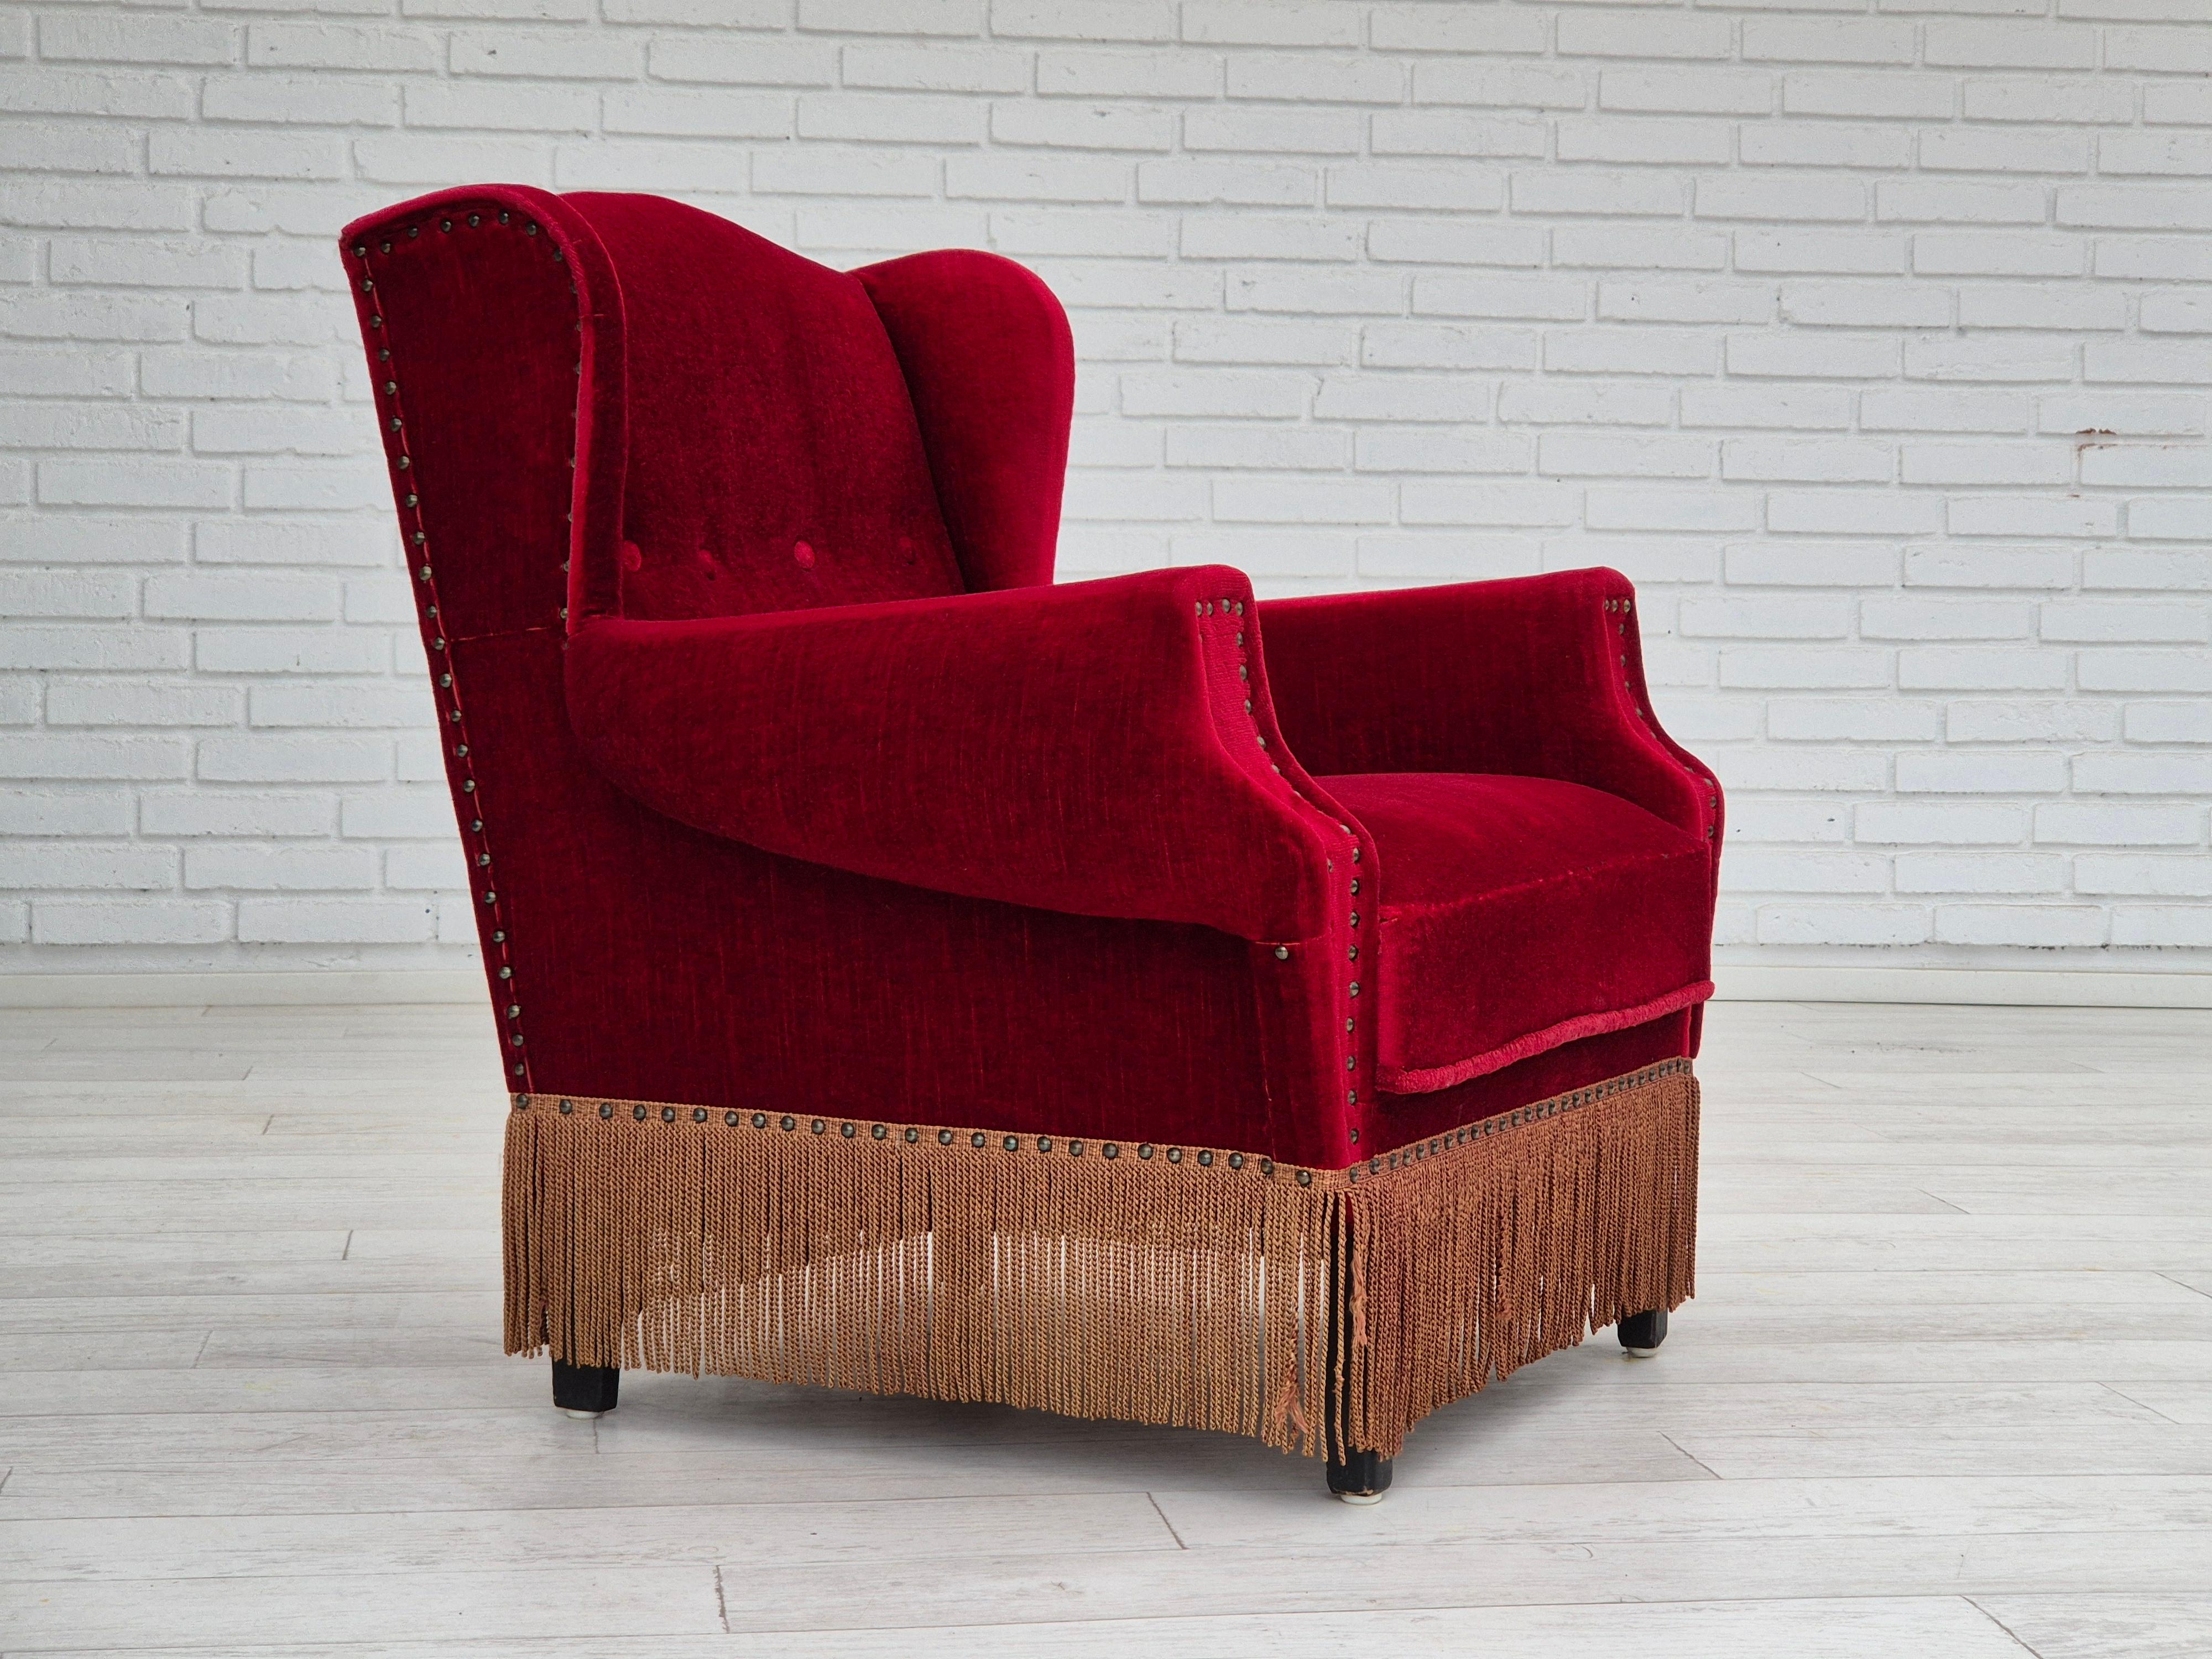 Chaise longue danoise des années 1960 en très bon état d'origine : pas d'odeur ni de tache. Velours d'ameublement rouge cerise, pieds en bois de chêne. Ressorts dans le siège. Fabriqué par un fabricant de meubles danois dans les années 1960.